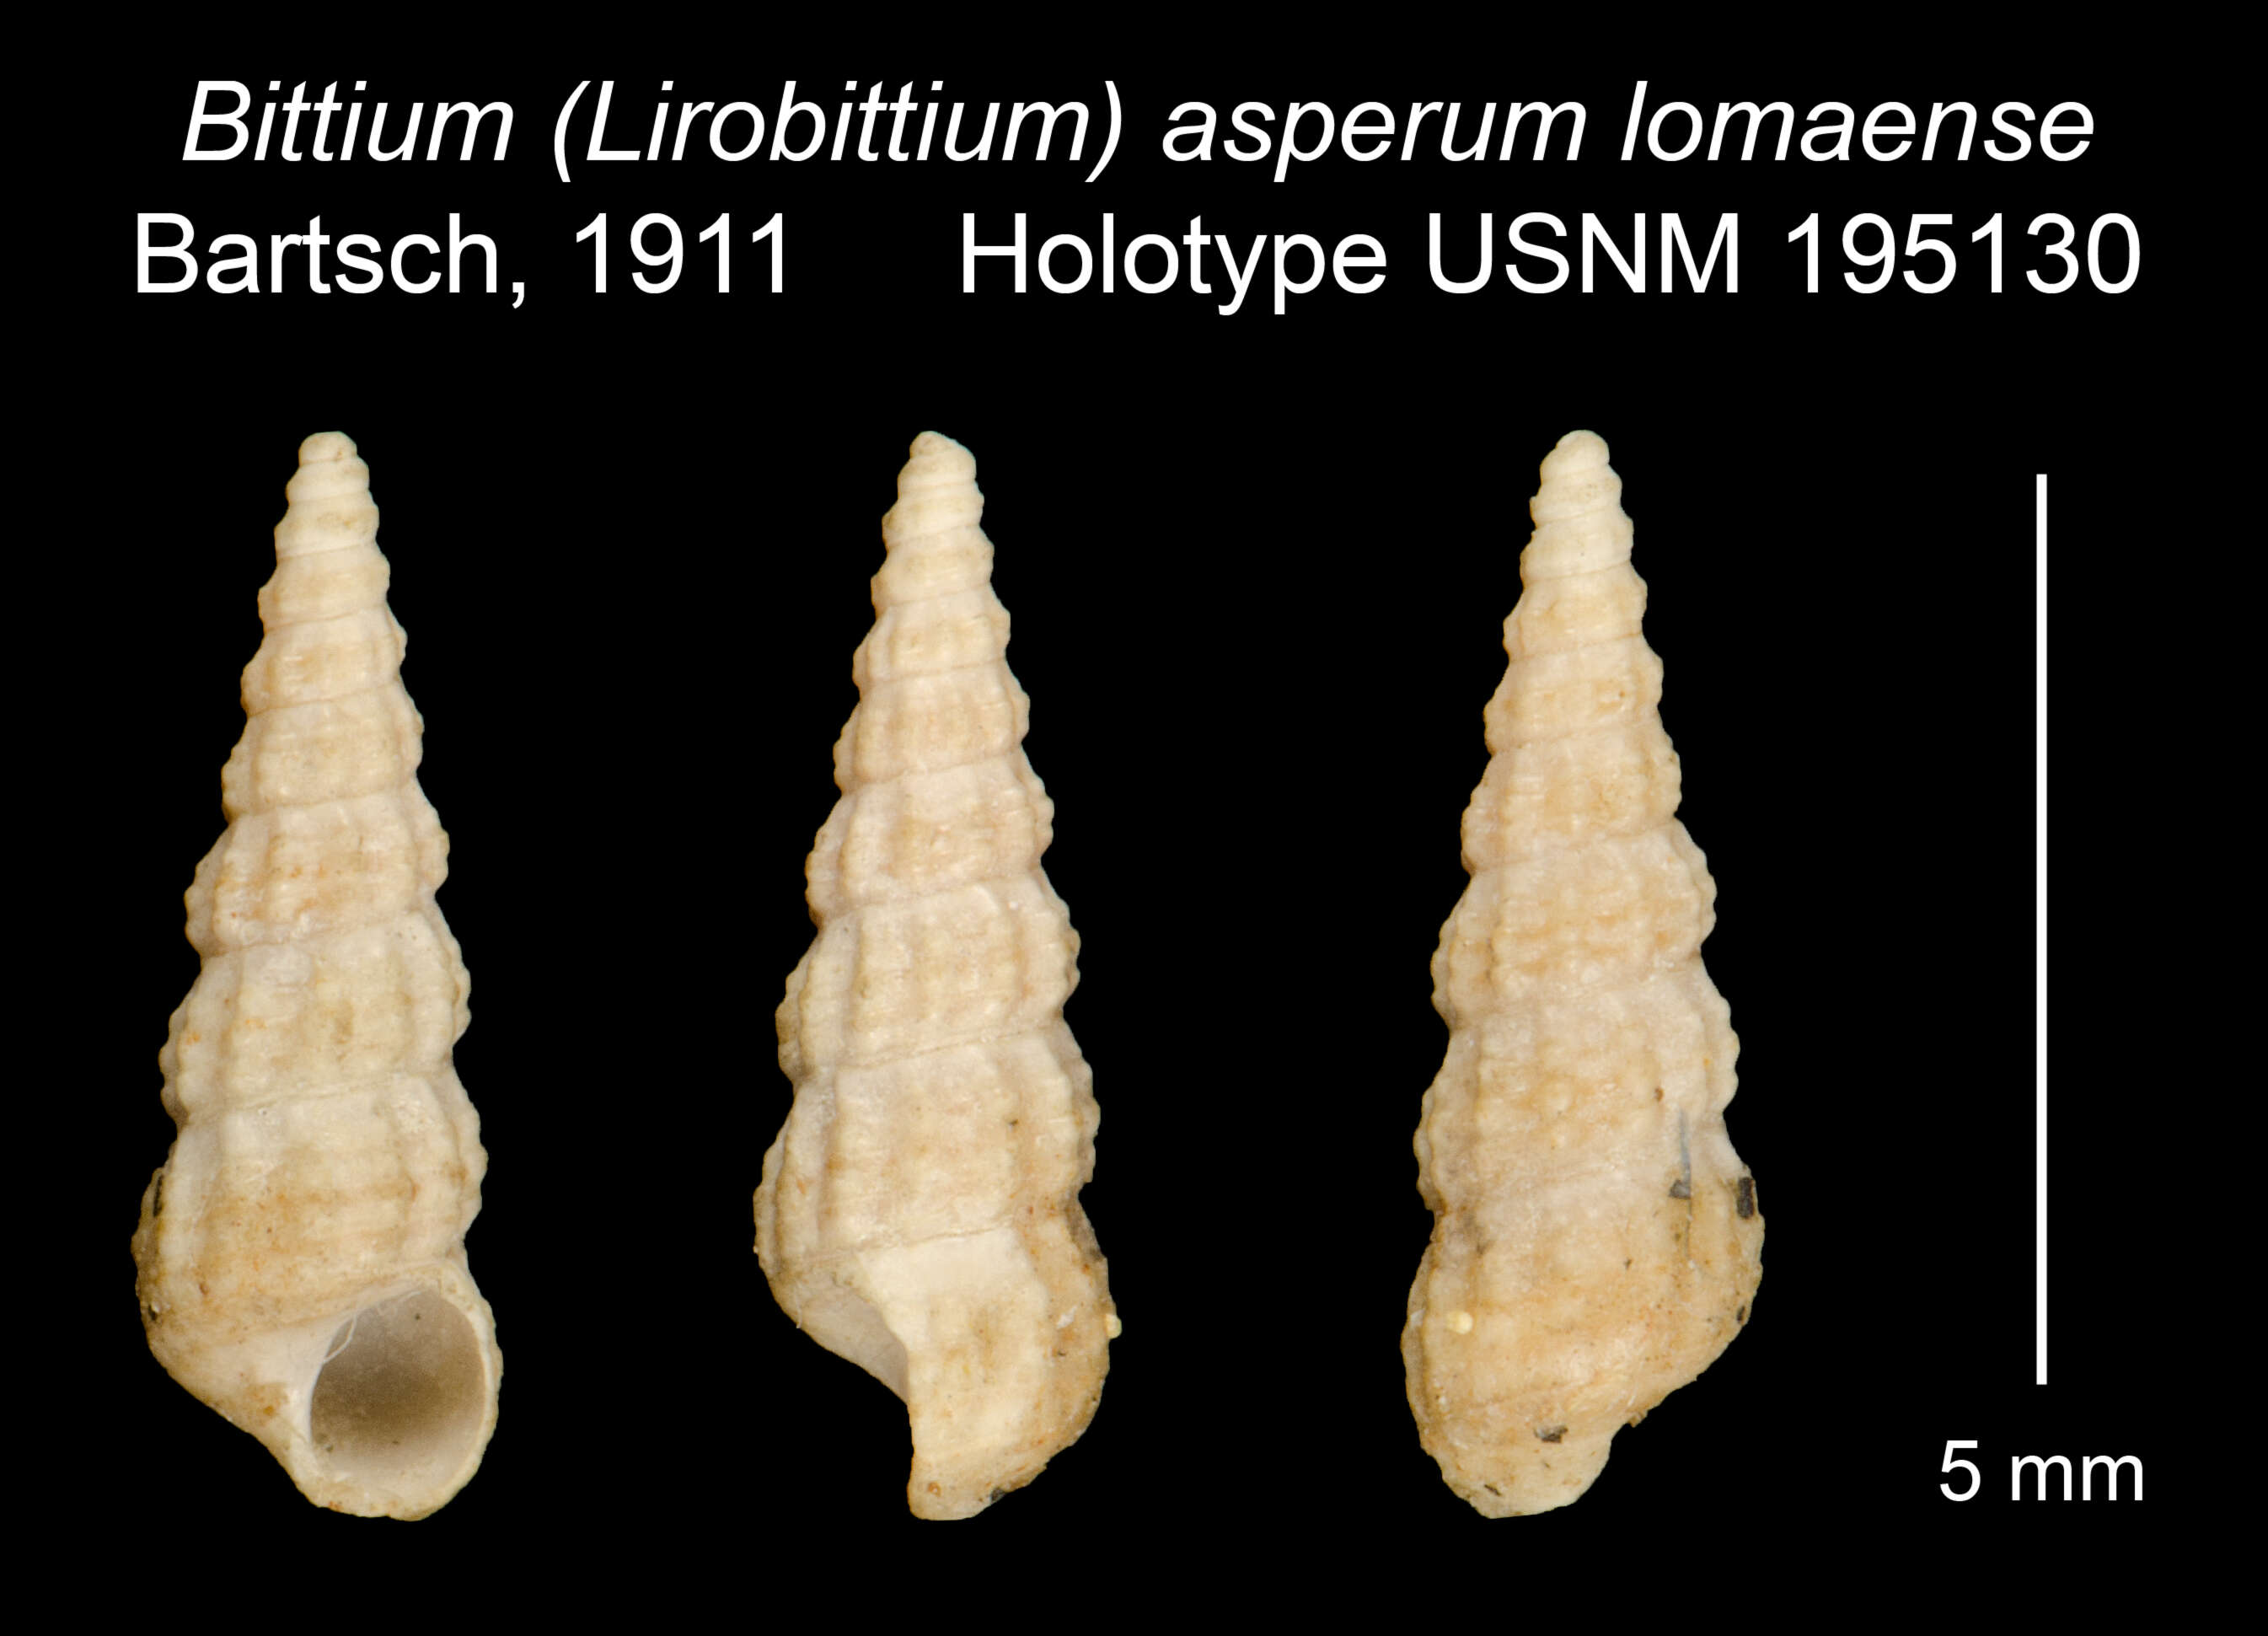 Image of Bittium asperum lomaense Bartsch 1911